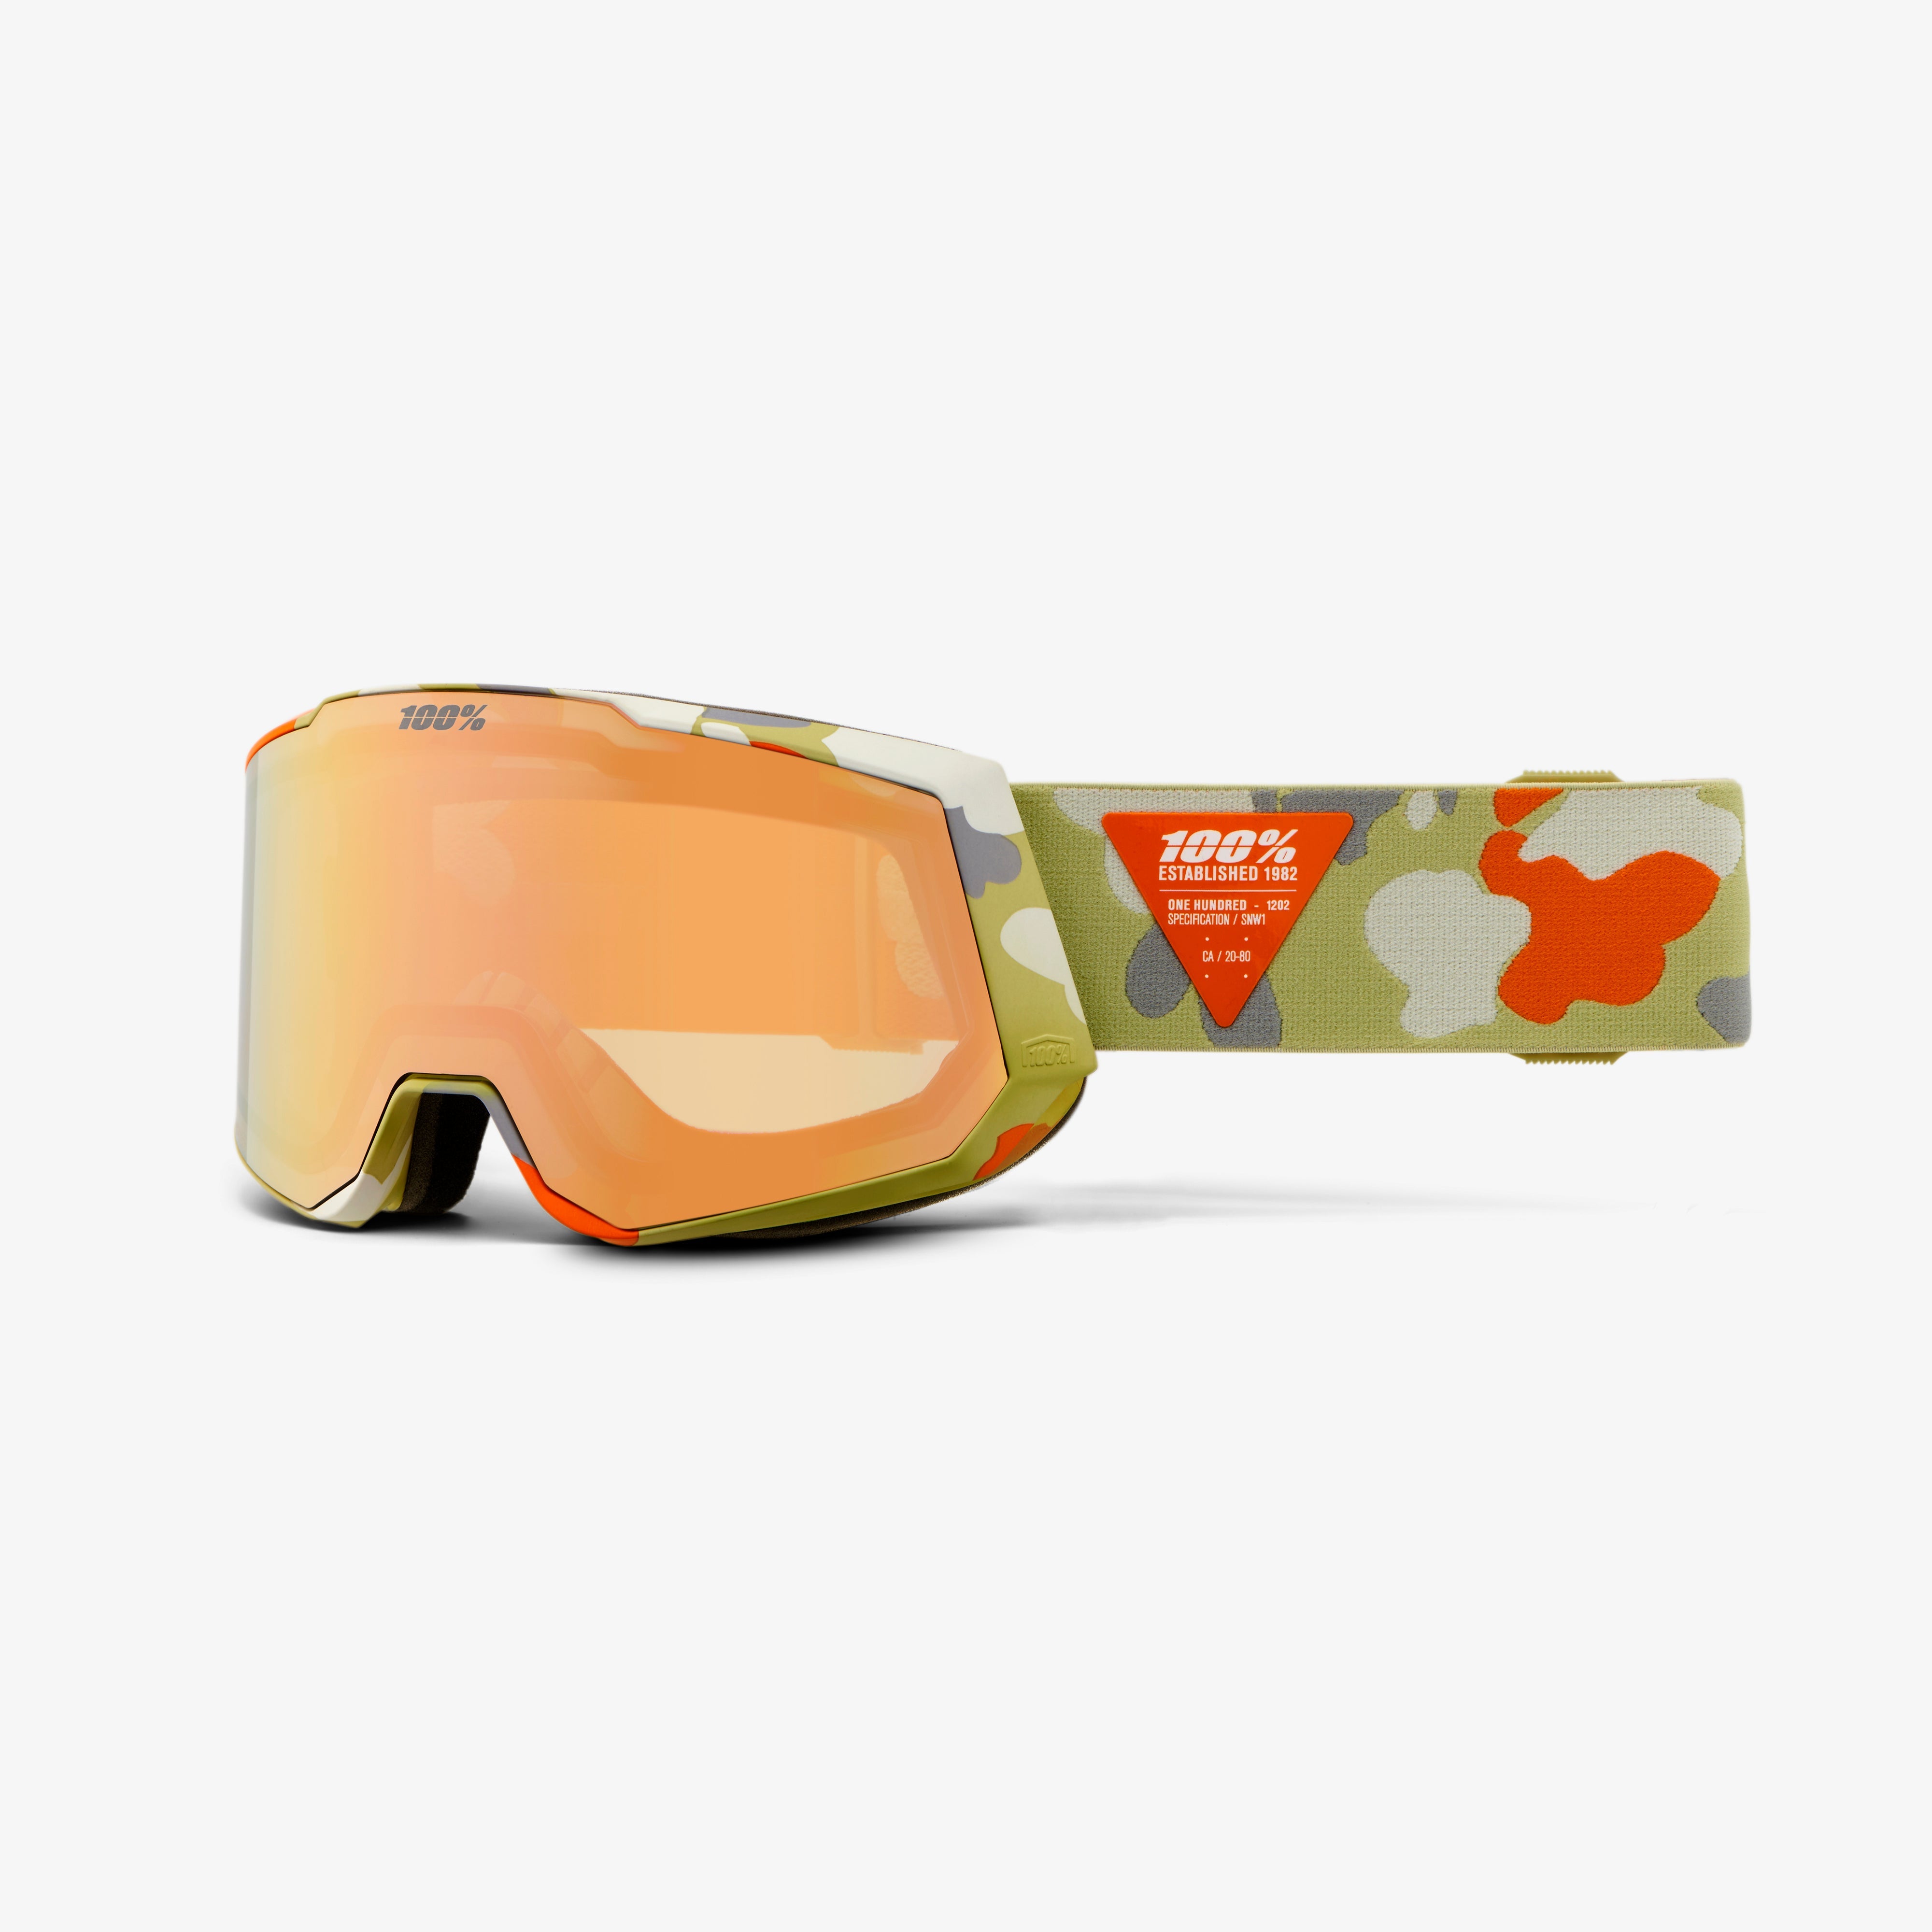 SNOWCRAFT XL HiPER Goggle Witsec